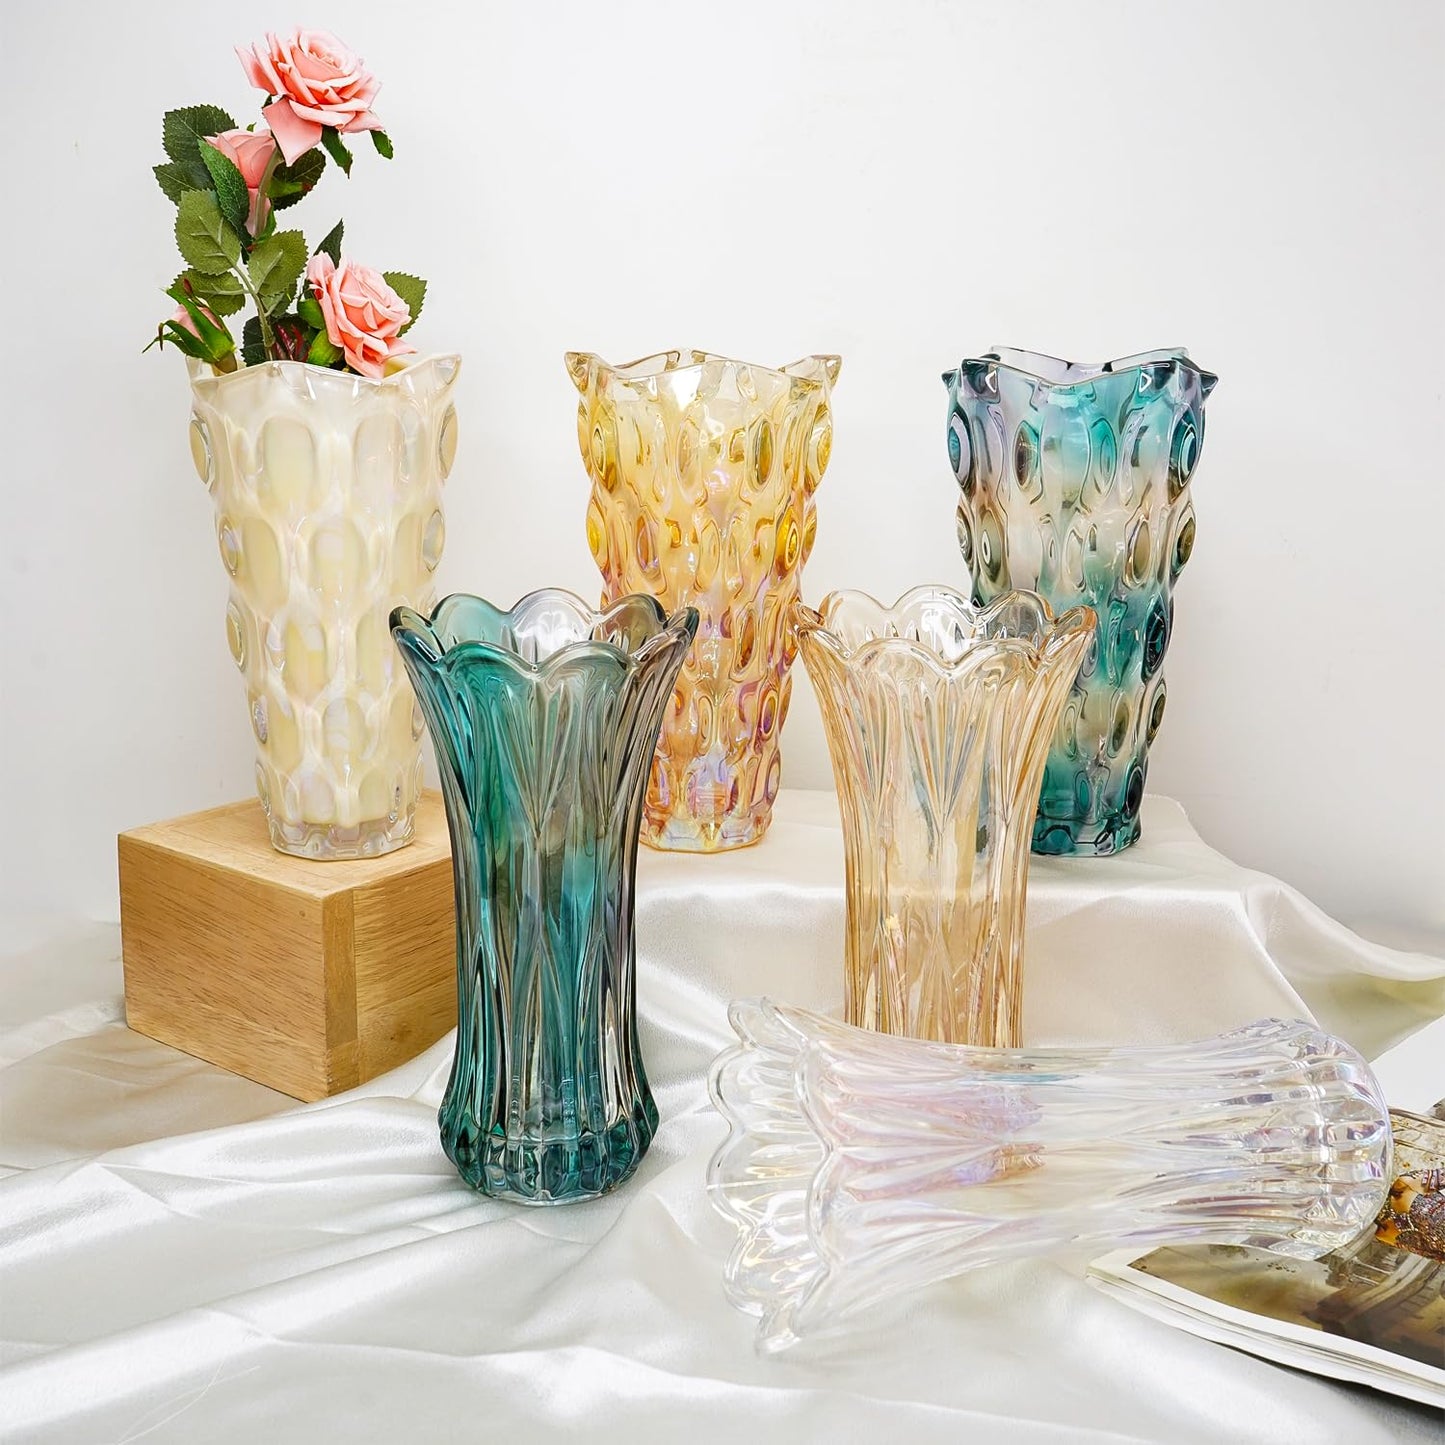 Ekhasa 100% Crystal Glass Vase Flower Pot for Home Decoration | Center Table Decorative Items | Thickened Transparent Glass Vase for Flowers. Bookshelf, Dinner Table, Office Desk & Premium Gift